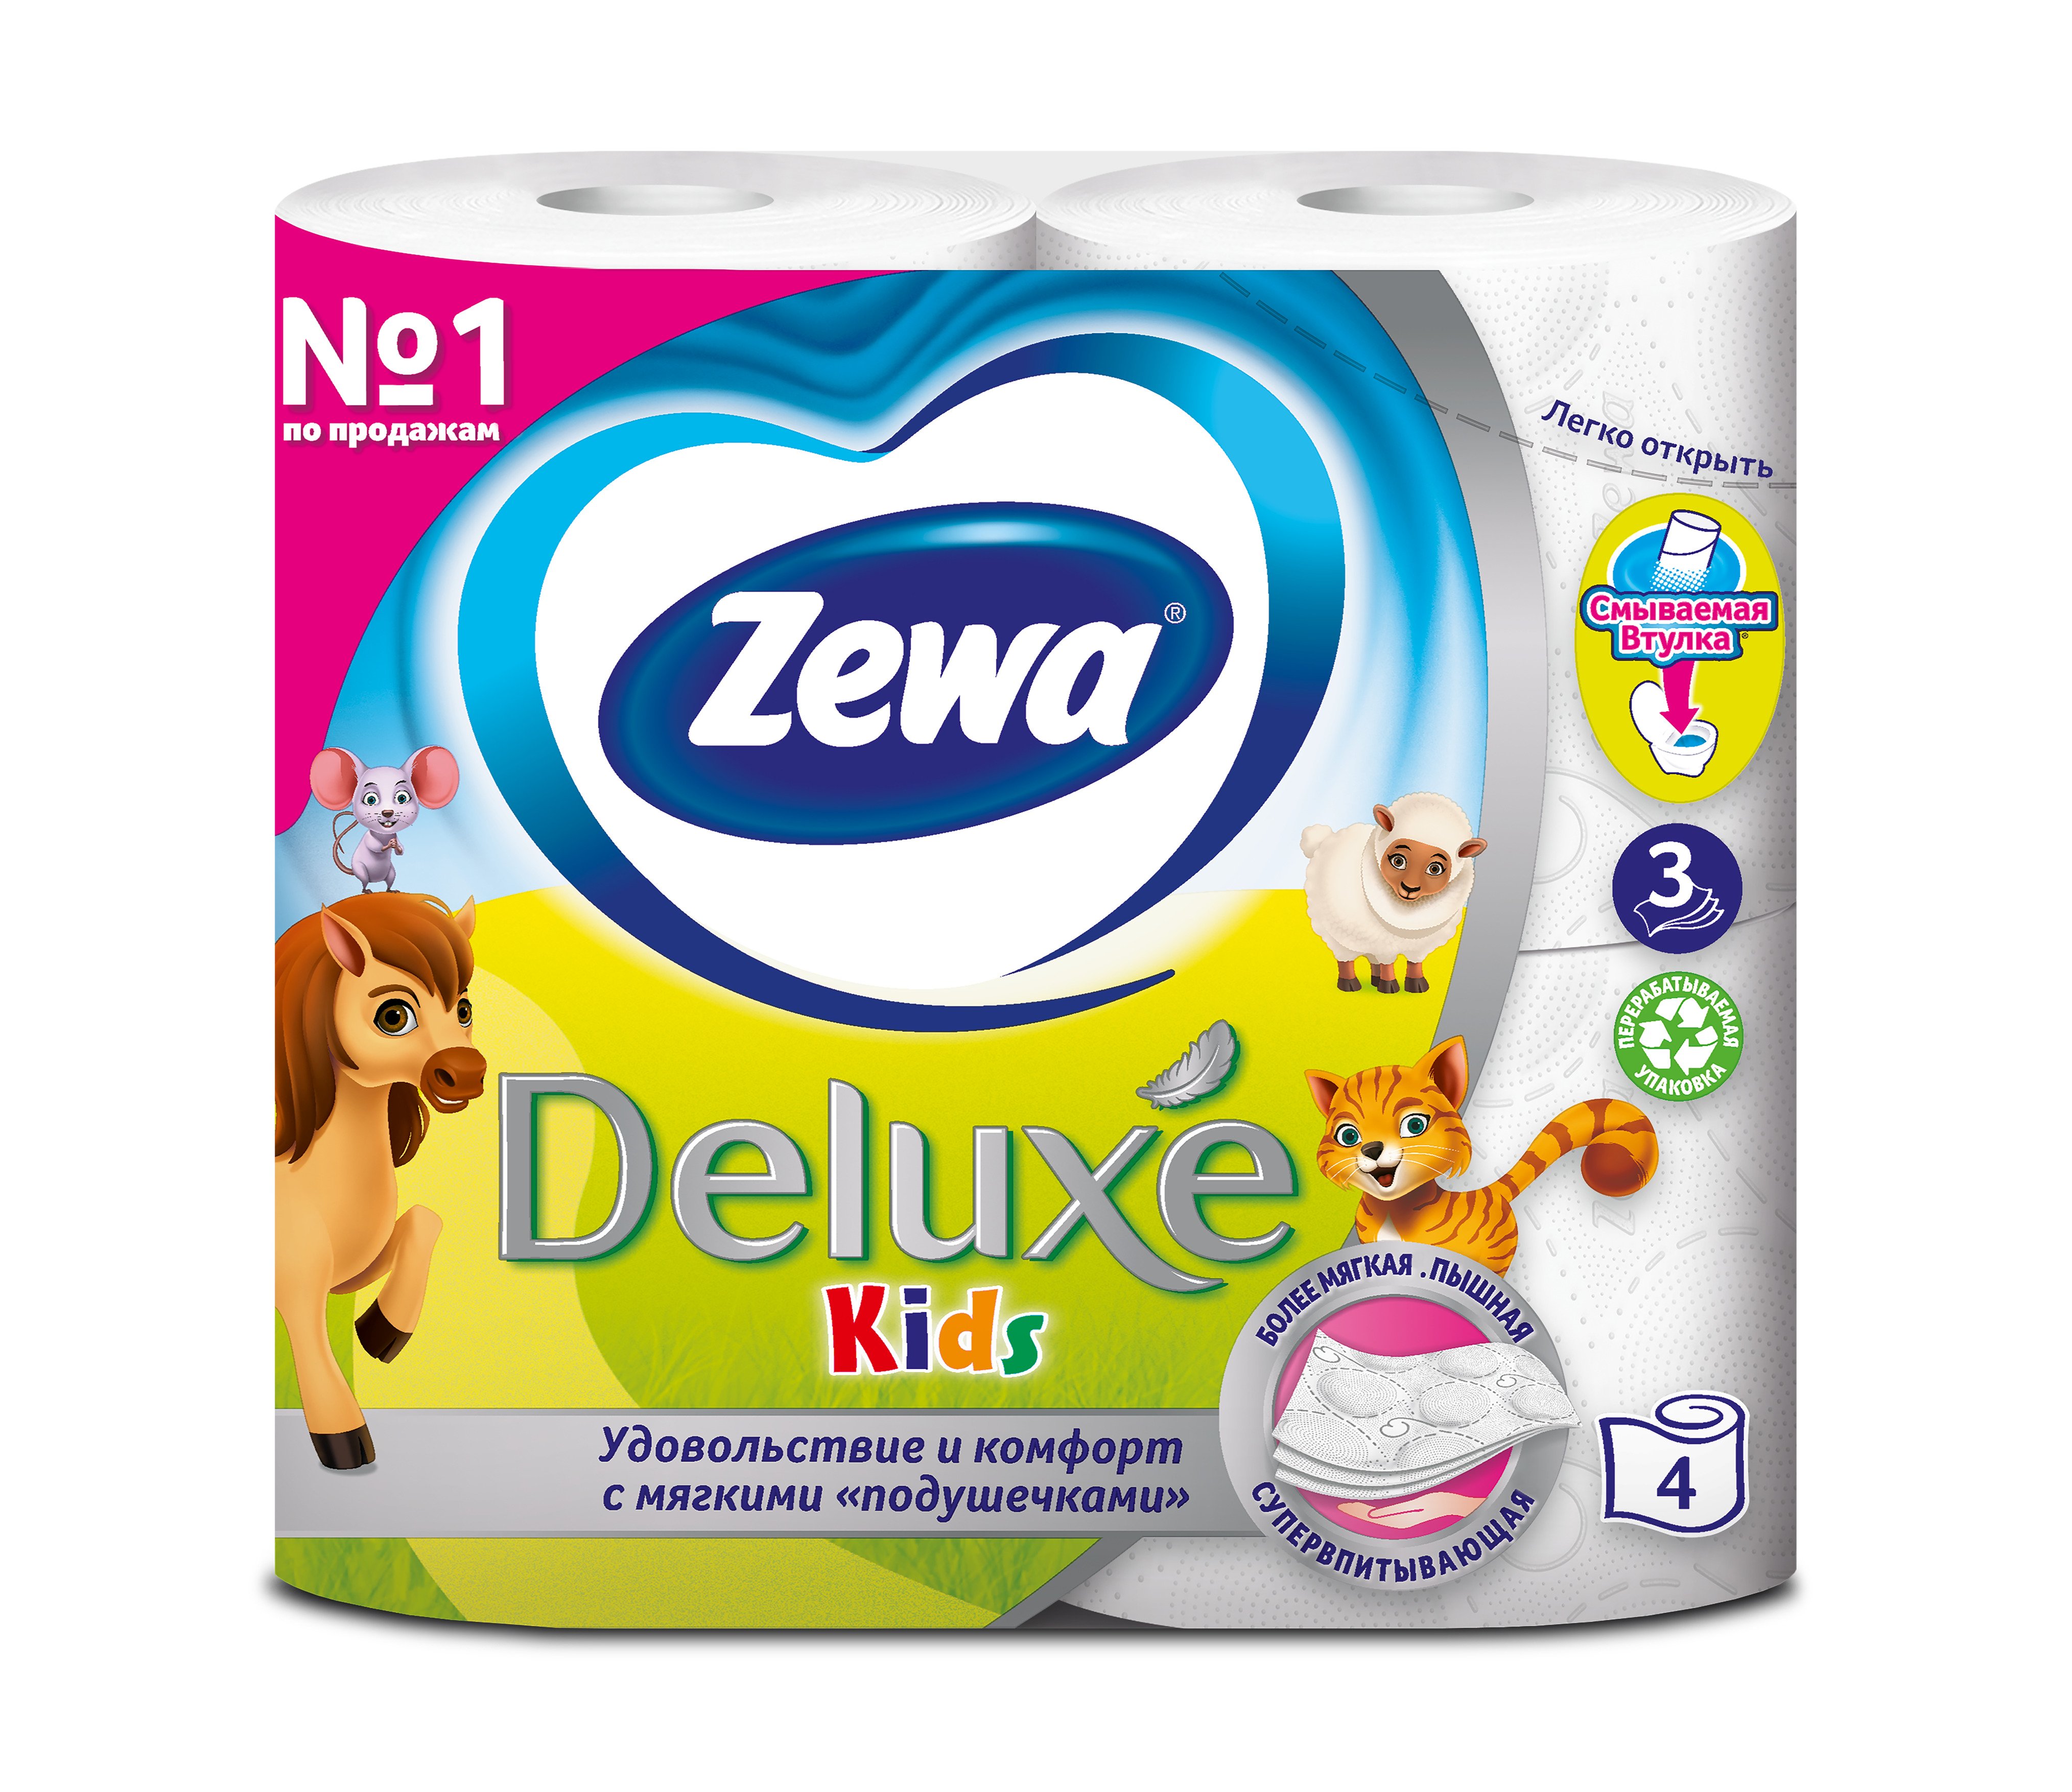 Трехслойная туалетная бумага Zewa Kids, 4 рулона - фото 1